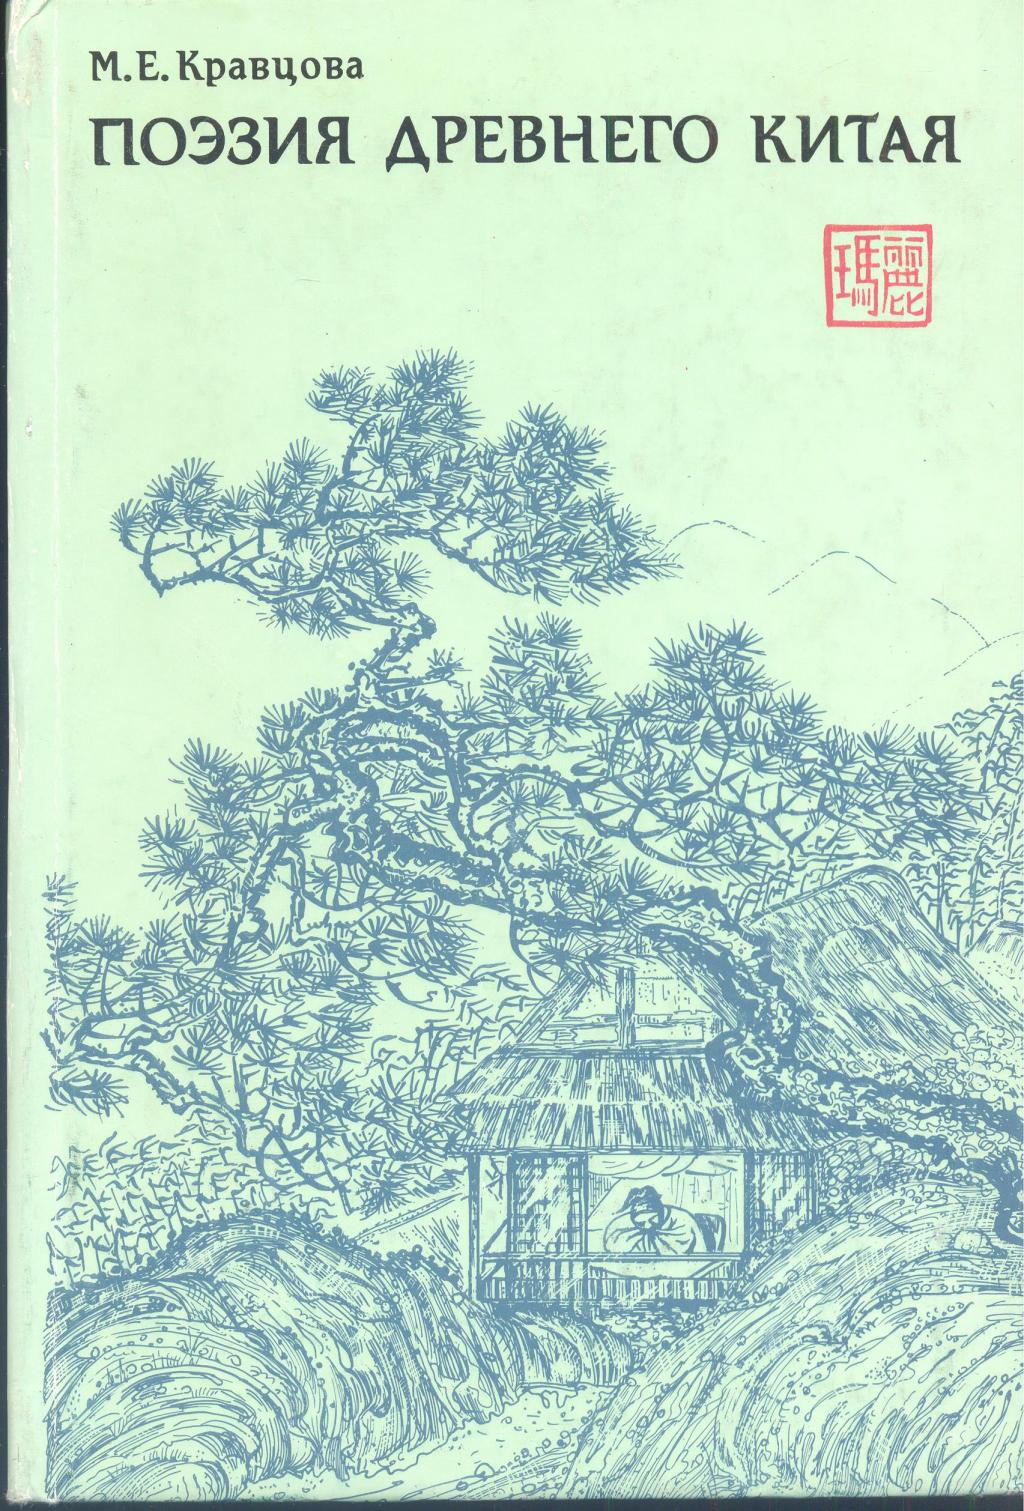 Поэзия Древнего Китая.Опыт анализа и антология художественных переводов